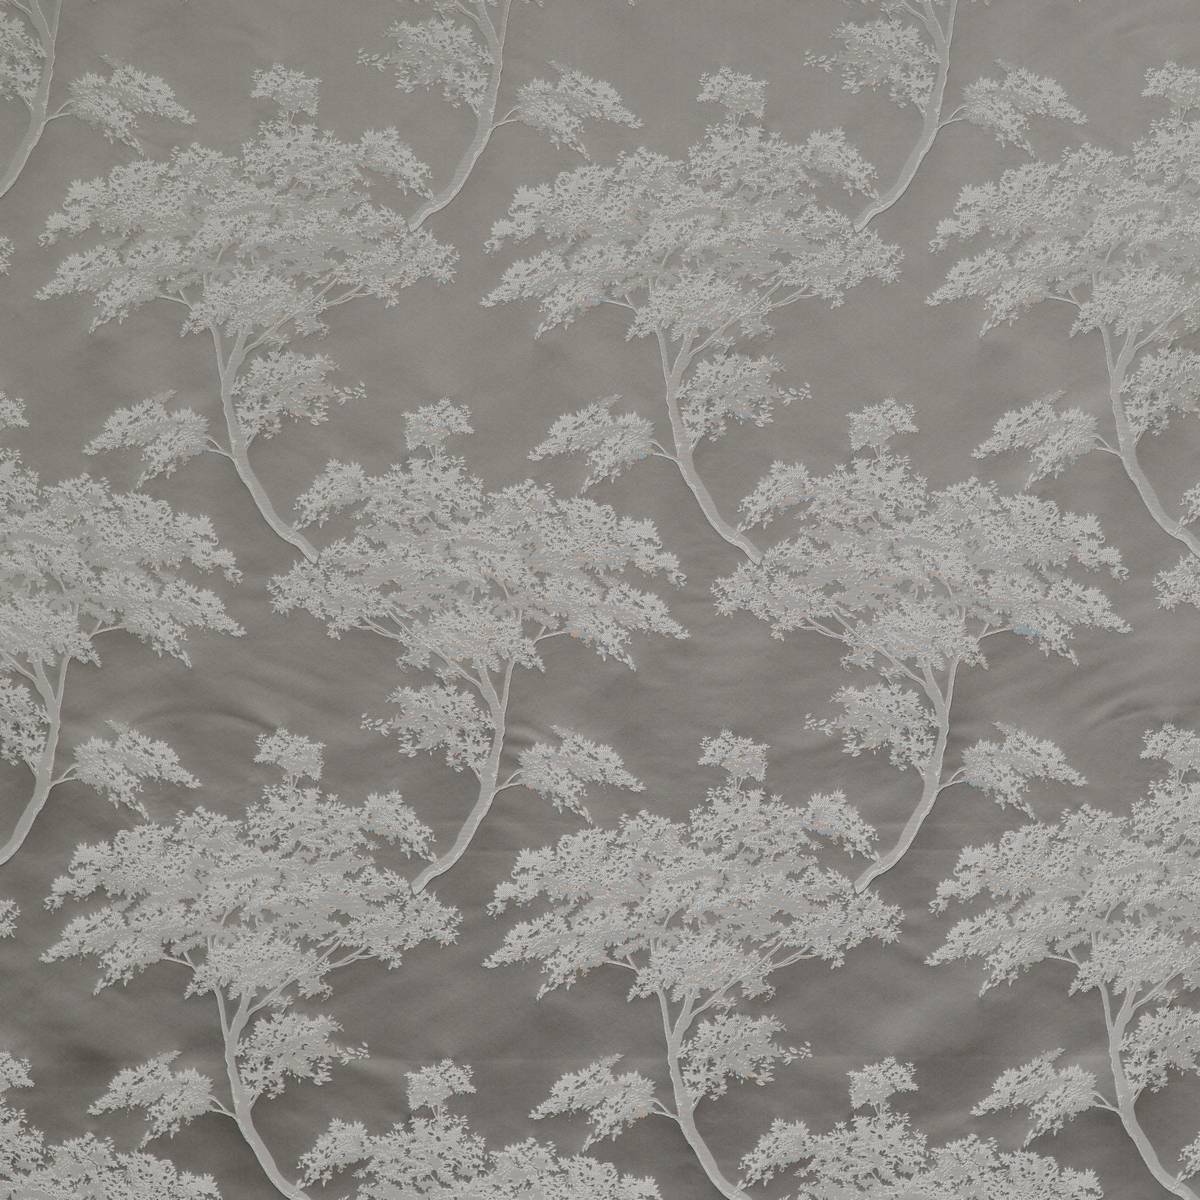 Japonica Fog Fabric by Ashley Wilde